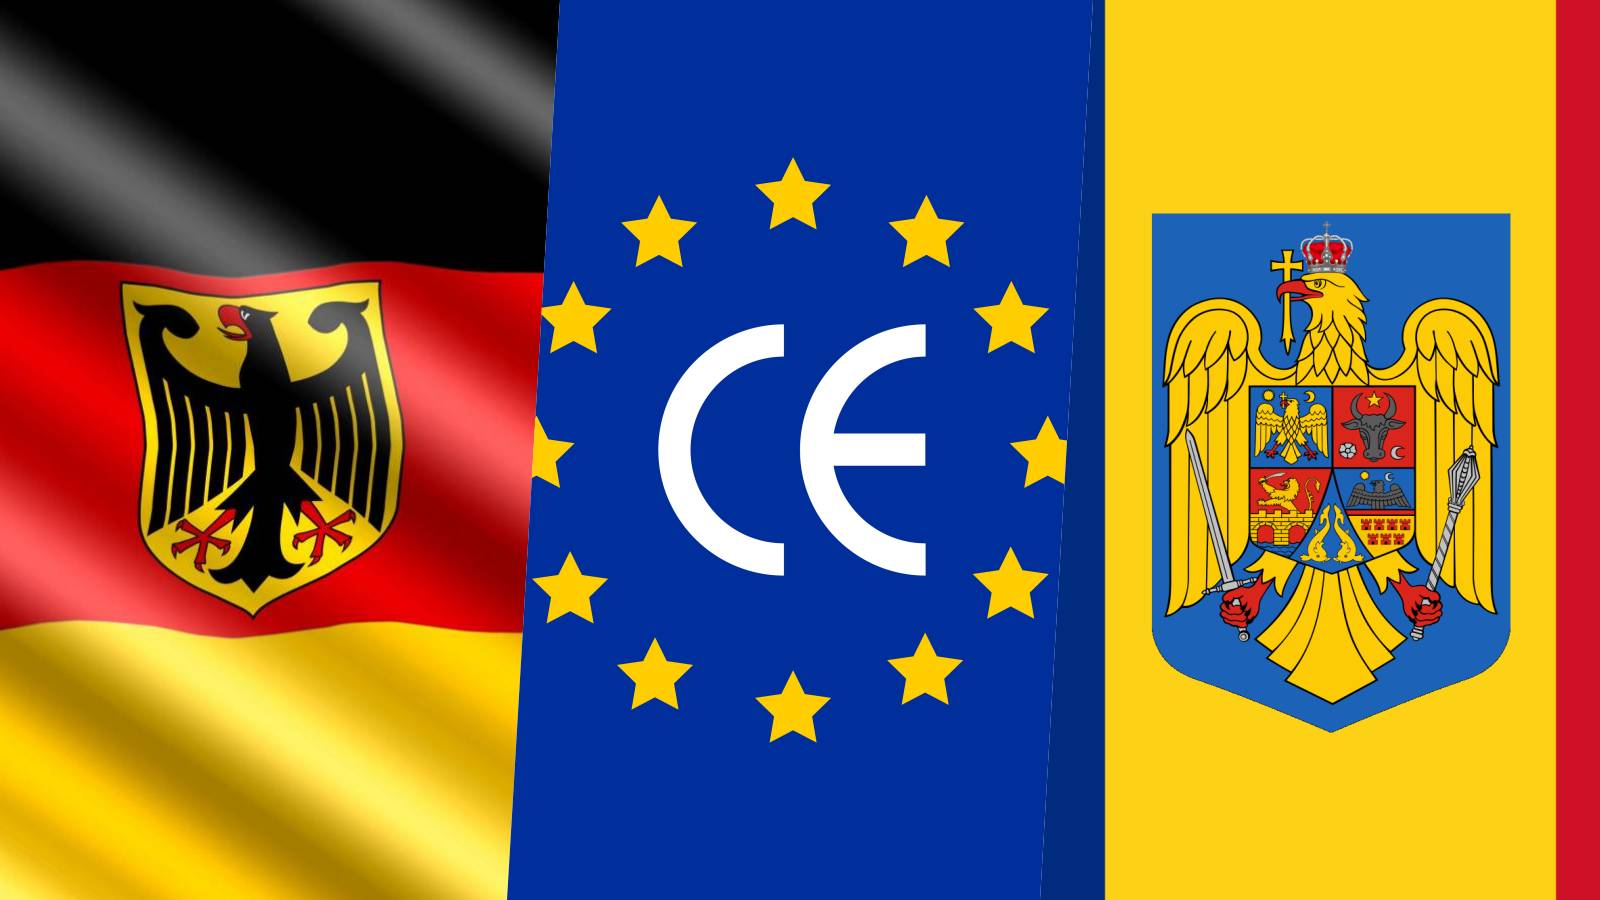 Germania Anuntul ULTIMA ORA poate BLOCA Aderarea Romaniei Schengen 2023